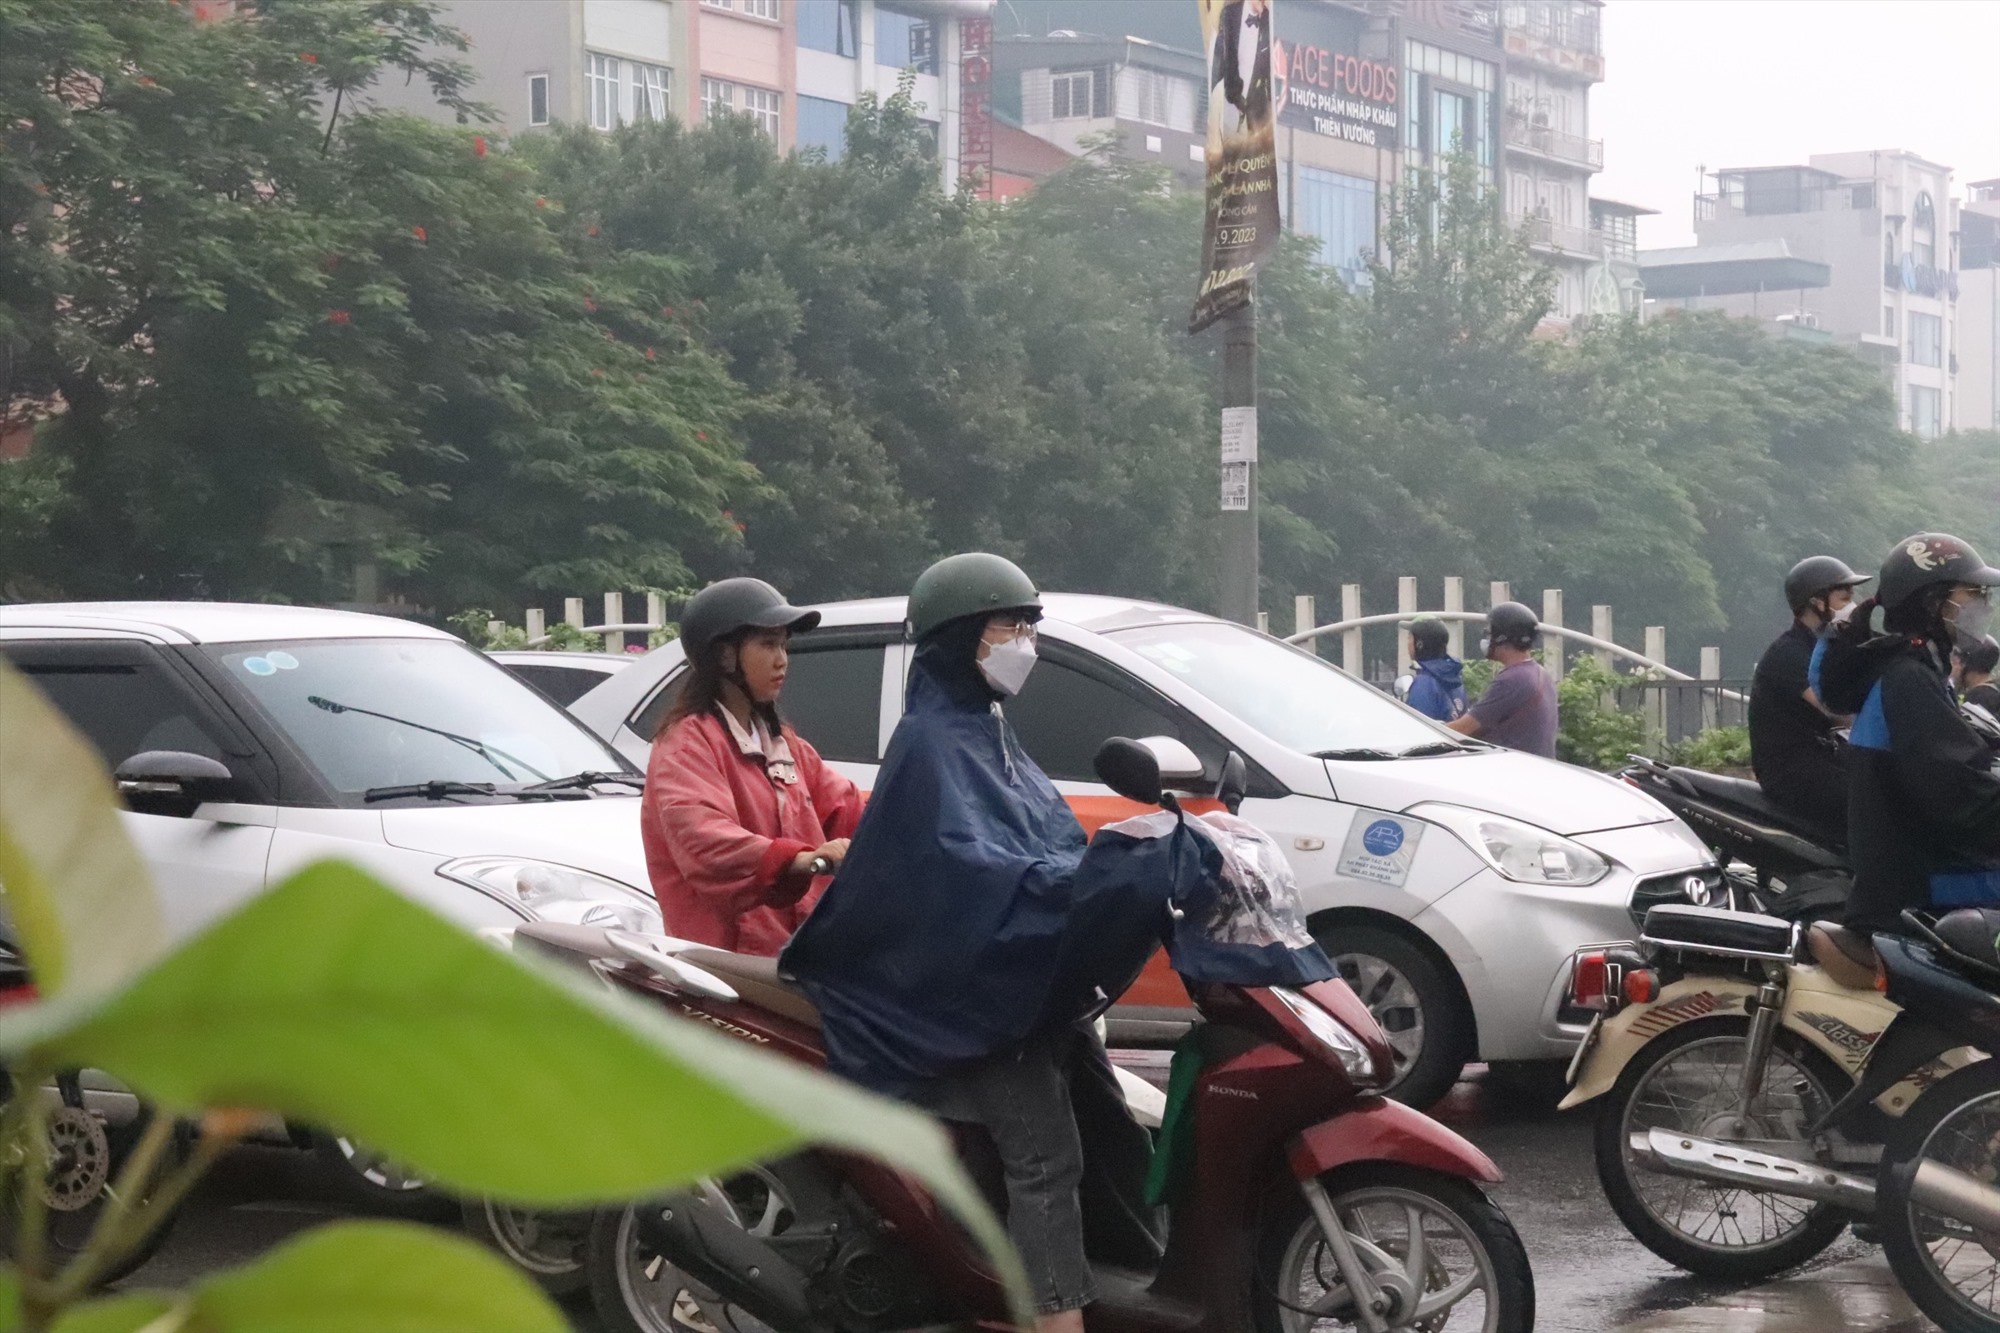 Theo ghi nhận của phóng viên, đến thời điểm hiện tại, nhiều nơi trên TP Hà Nội đang có mưa vừa và mưa to, cộng với lưu lượng sương mù bao phủ nên hạn chế tầm nhìn. Vì vậy người tham gia giao thông cần chú ý quan sát khi tham gia giao thông.